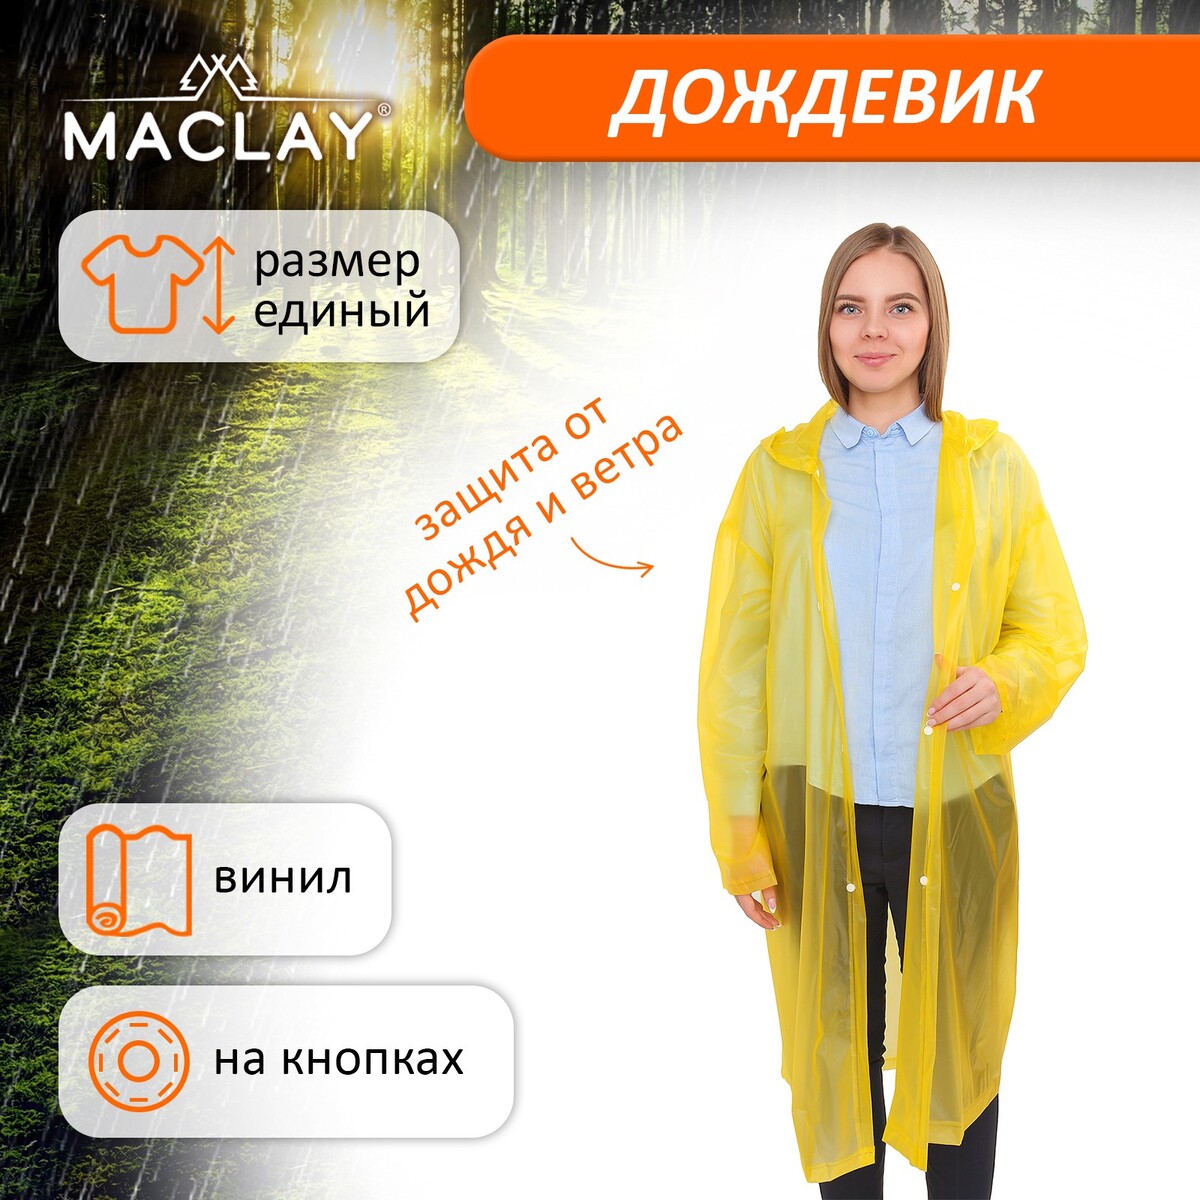 Дождевик-плащ maclay, универсальный, цвет желтый дождевик maclay рыбацкий шитый 65 мкр 200 г 10% р универсальный